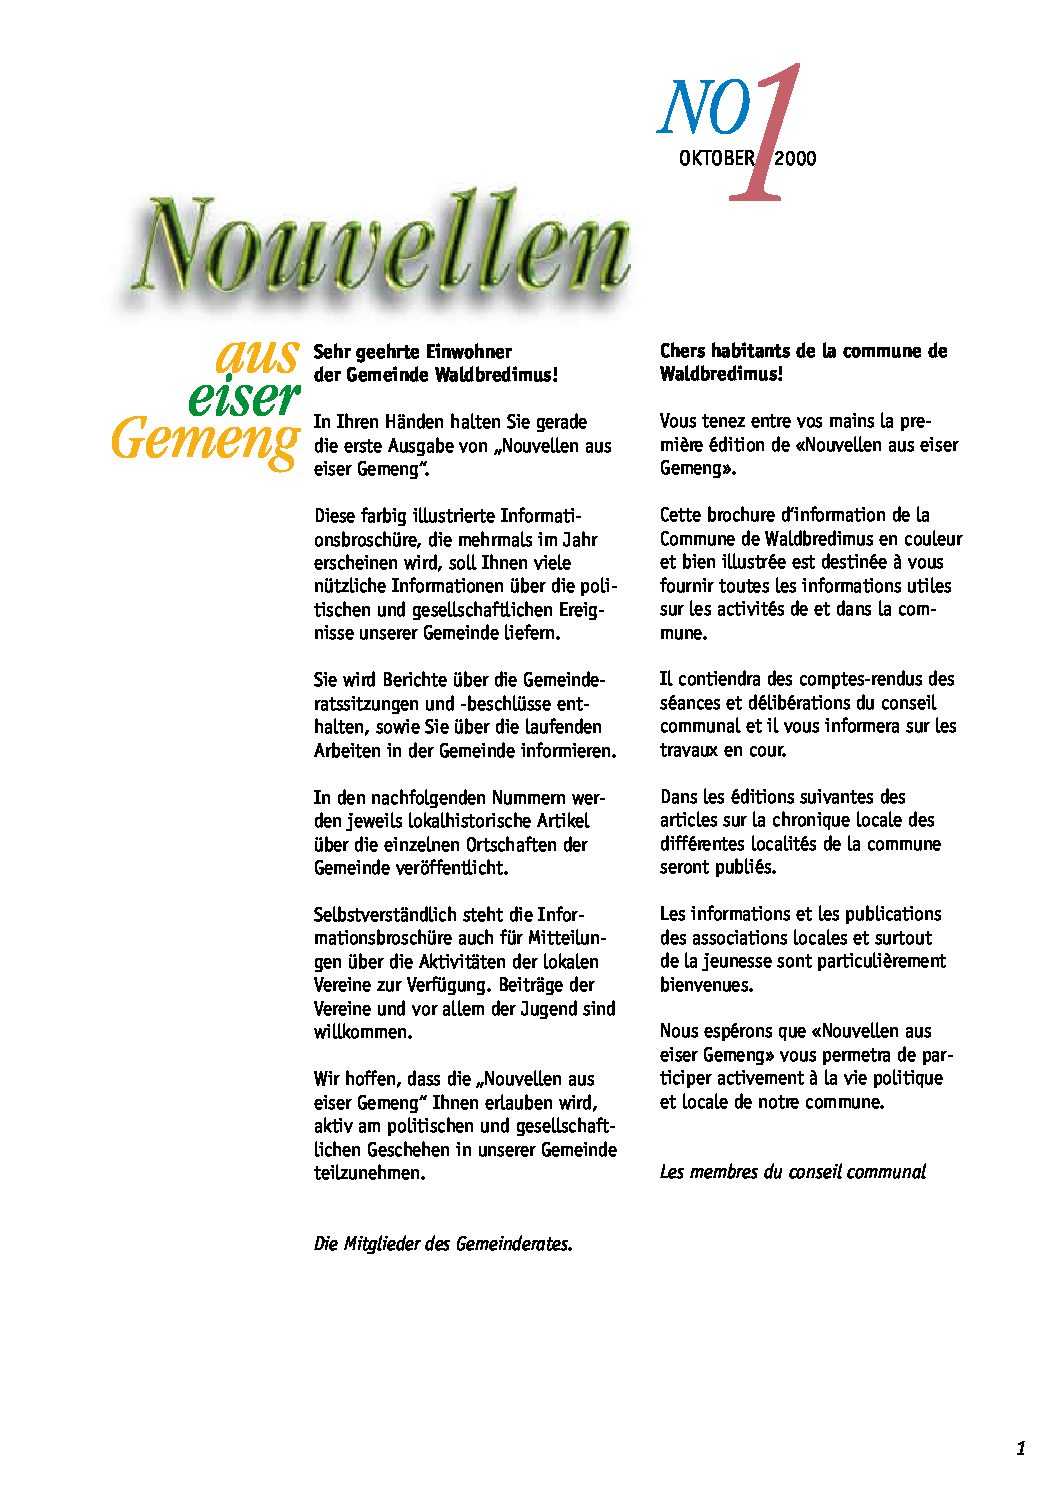 Nouvellen 01 - October 2000